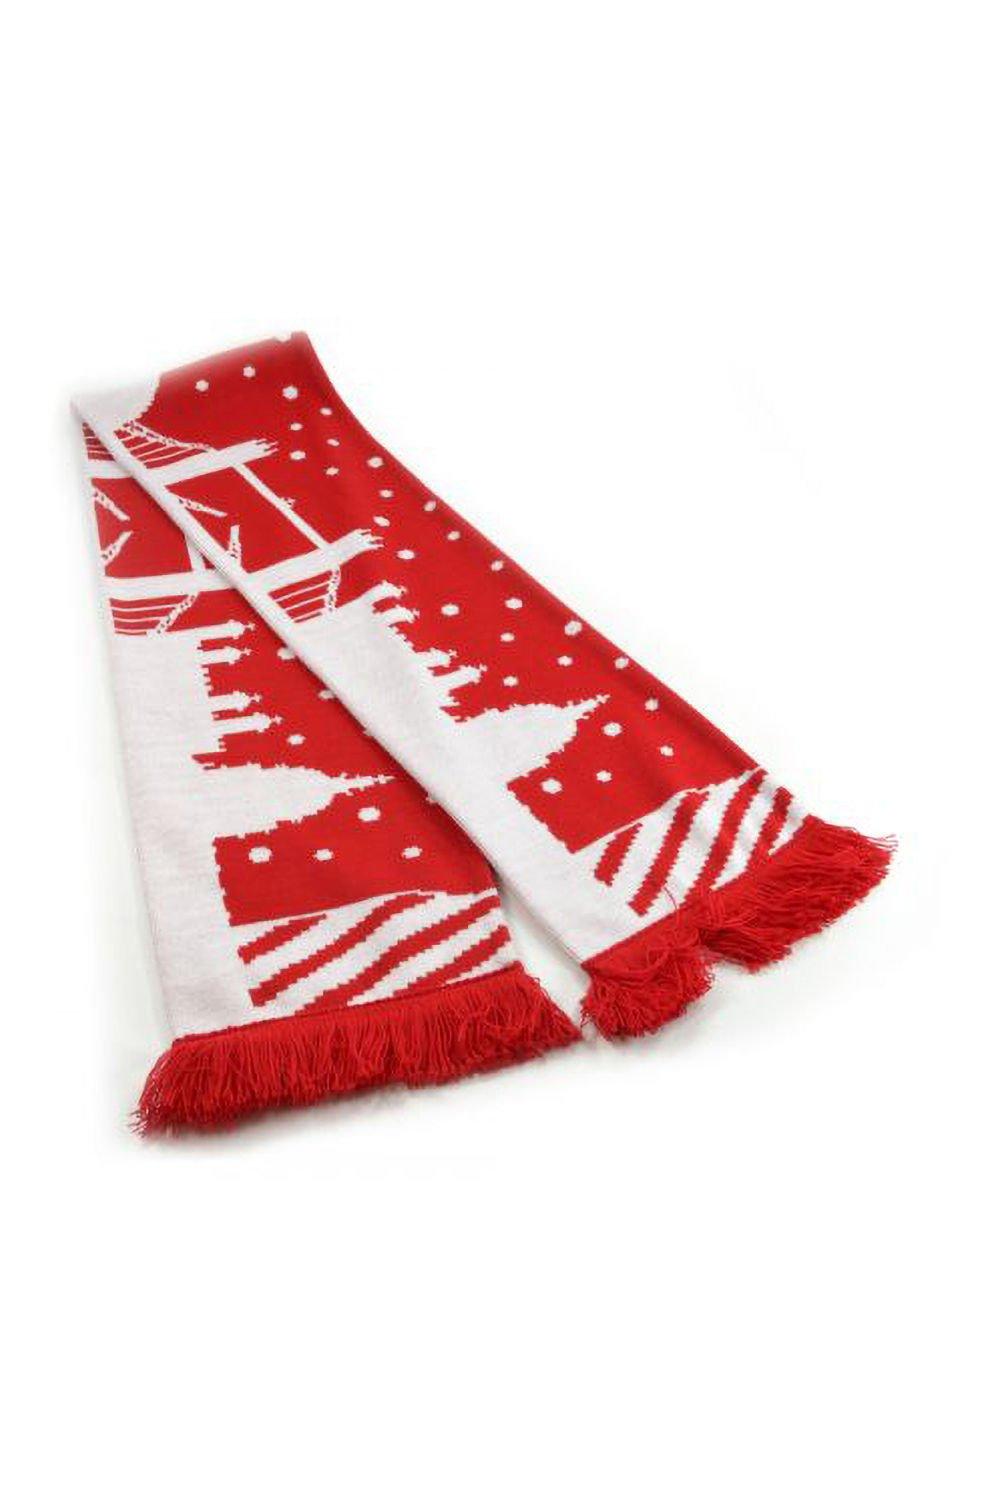 Рождественский шарф Тауэрского моста Universal Textiles, красный jnby бирюзовый жаккардовый шарф jnby